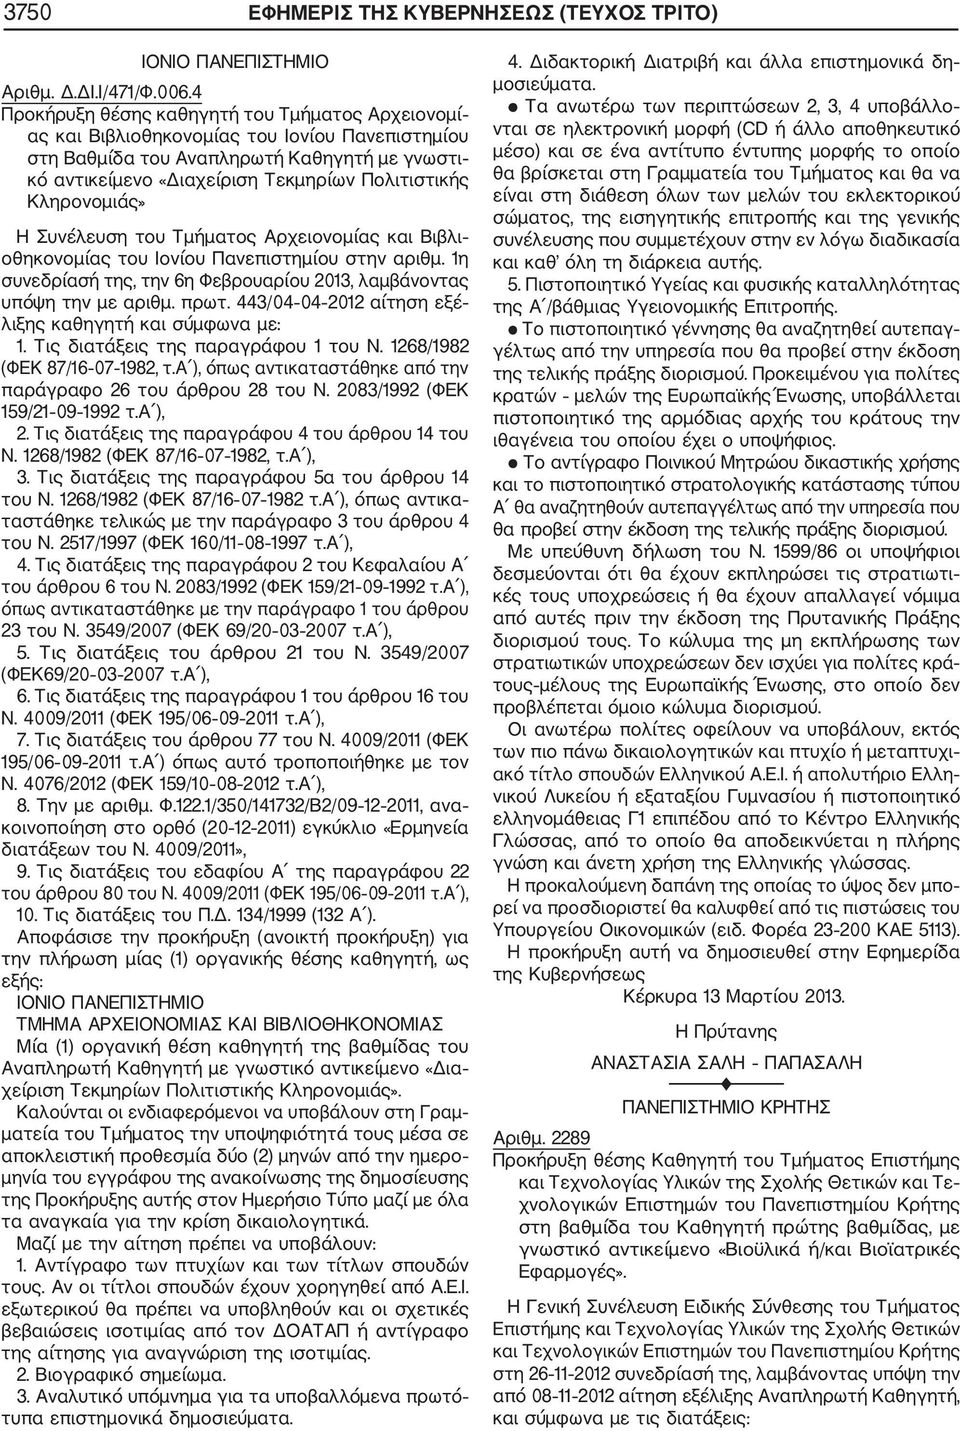 Κληρονομιάς» Η Συνέλευση του Τμήματος Αρχειονομίας και Βιβλι οθηκονομίας του Ιονίου Πανεπιστημίου στην αριθμ. 1η συνεδρίασή της, την 6η Φεβρουαρίου 2013, λαμβάνοντας υπόψη την με αριθμ. πρωτ.